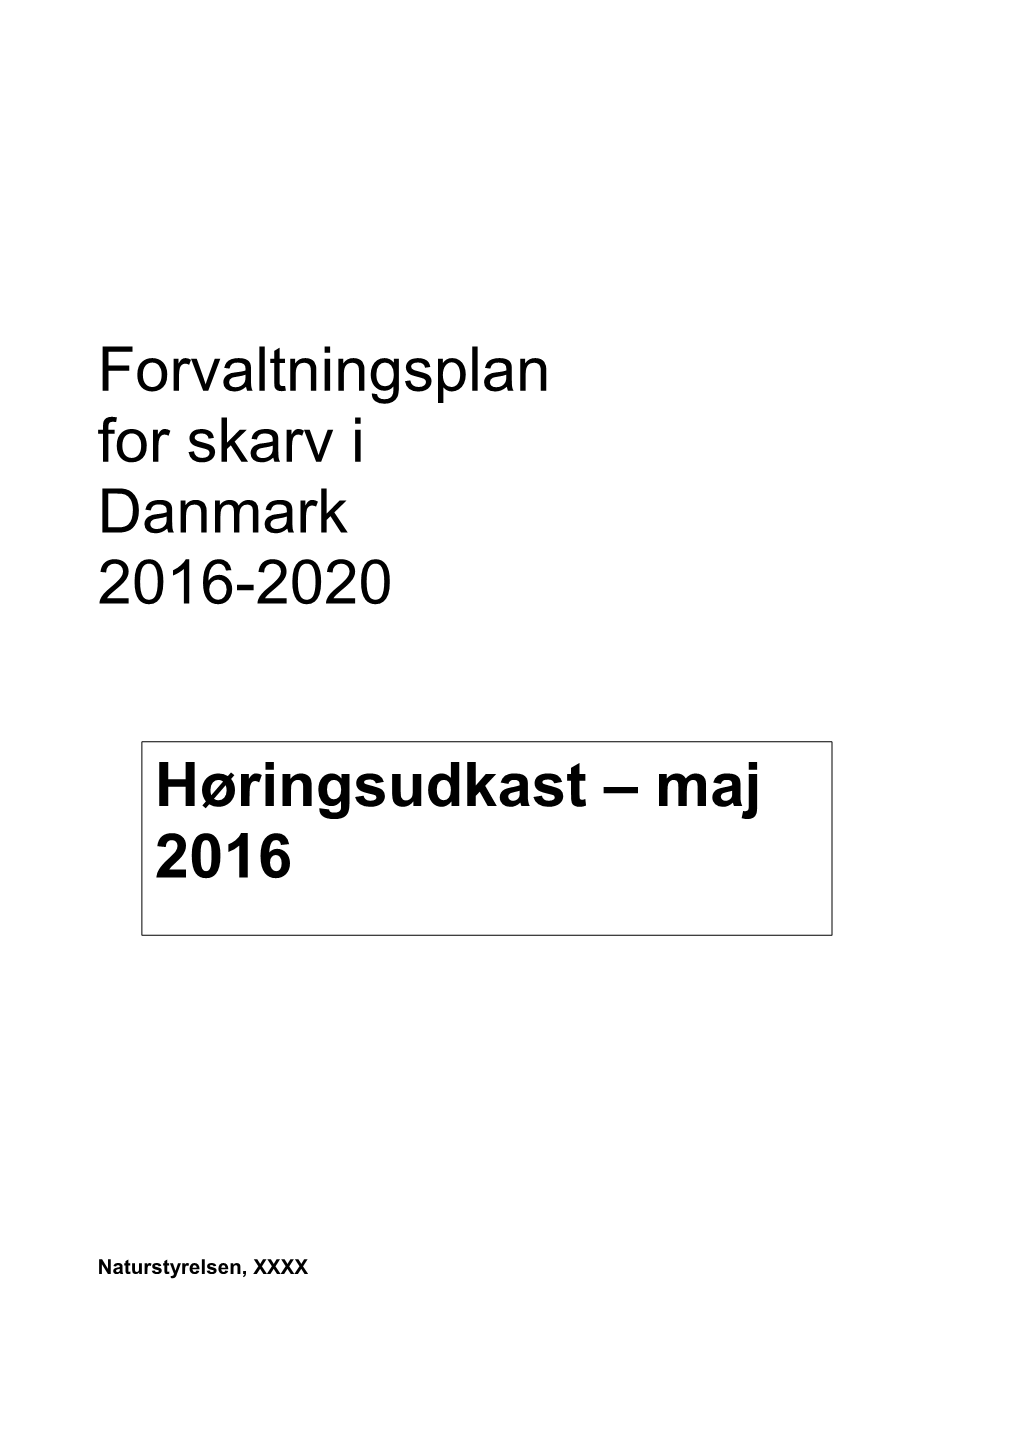 Forvaltningsplan for Skarv I Danmark 2016-2020 Høringsudkast